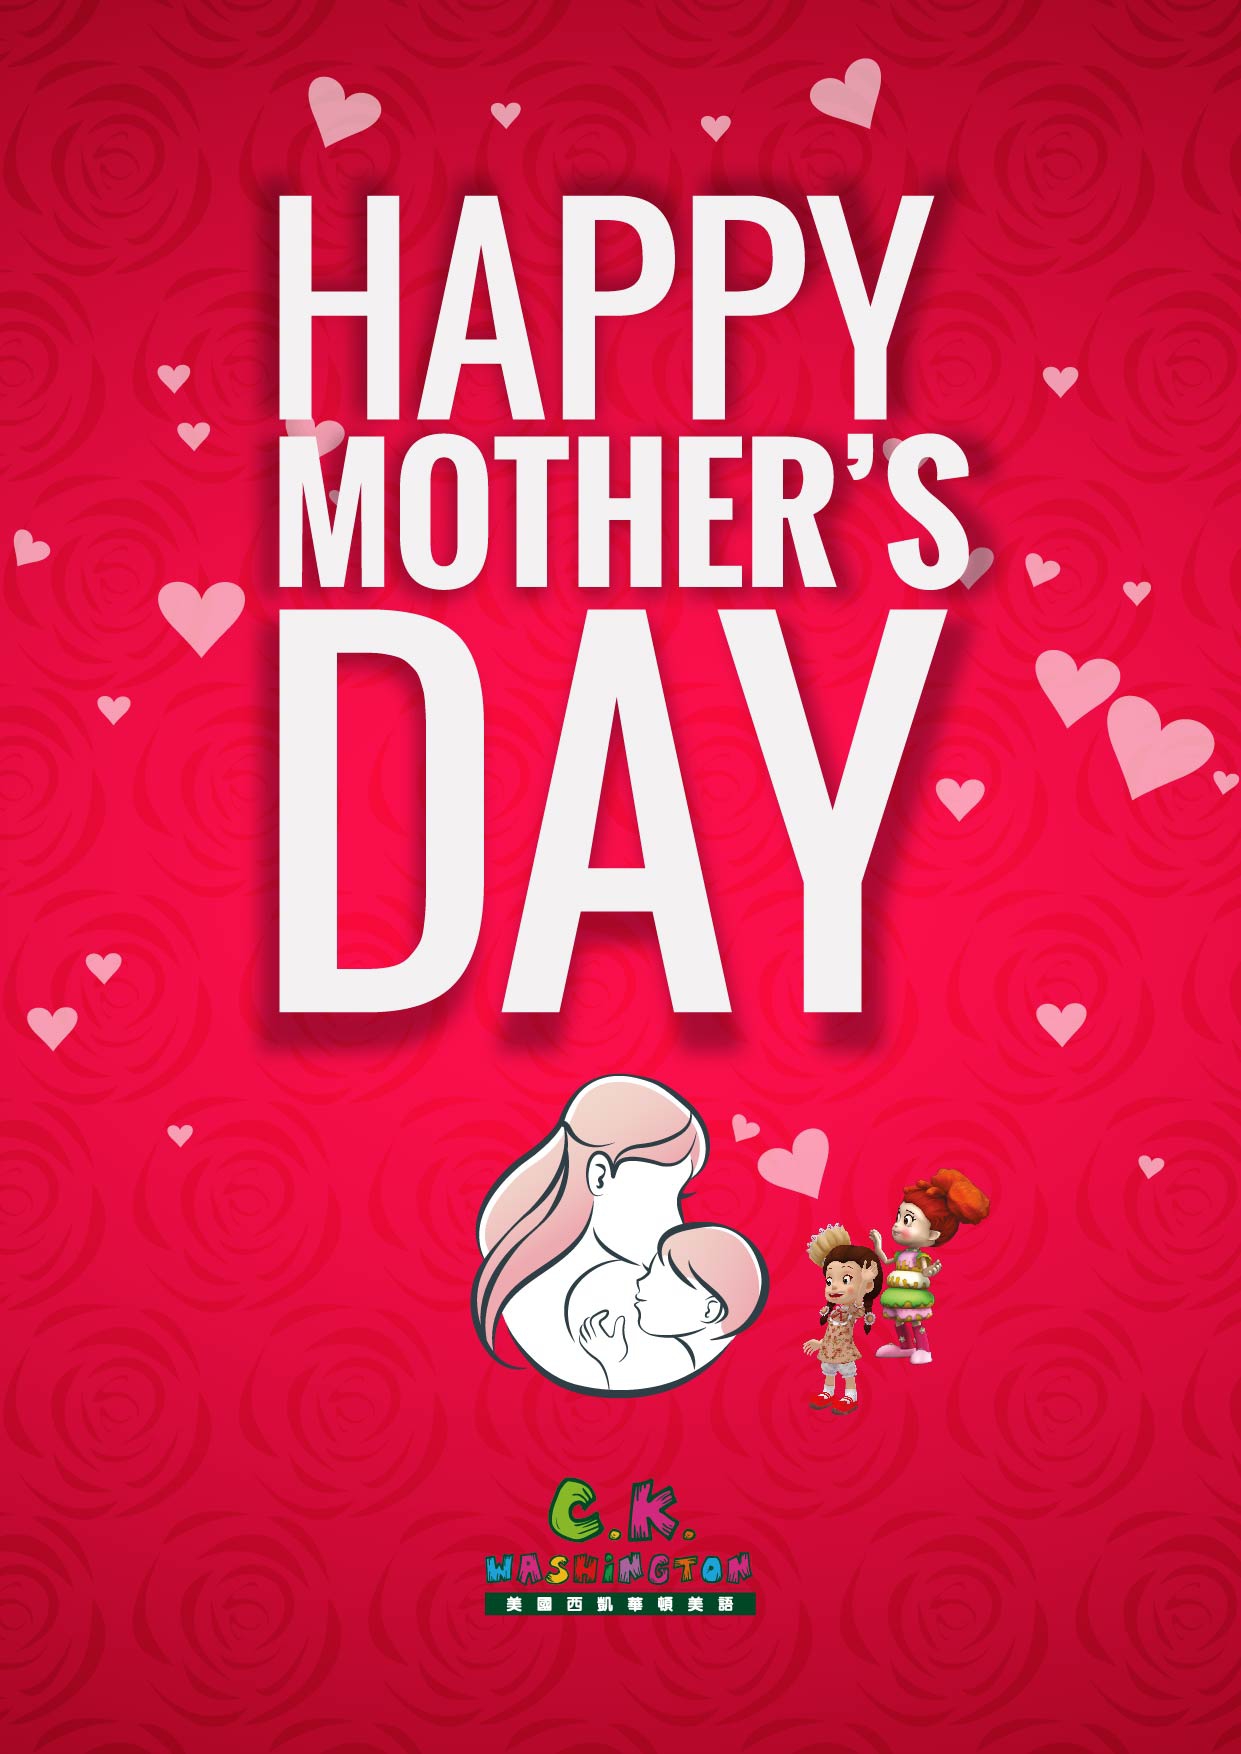 母親節相關教學資源! Happy Mother's Day! 